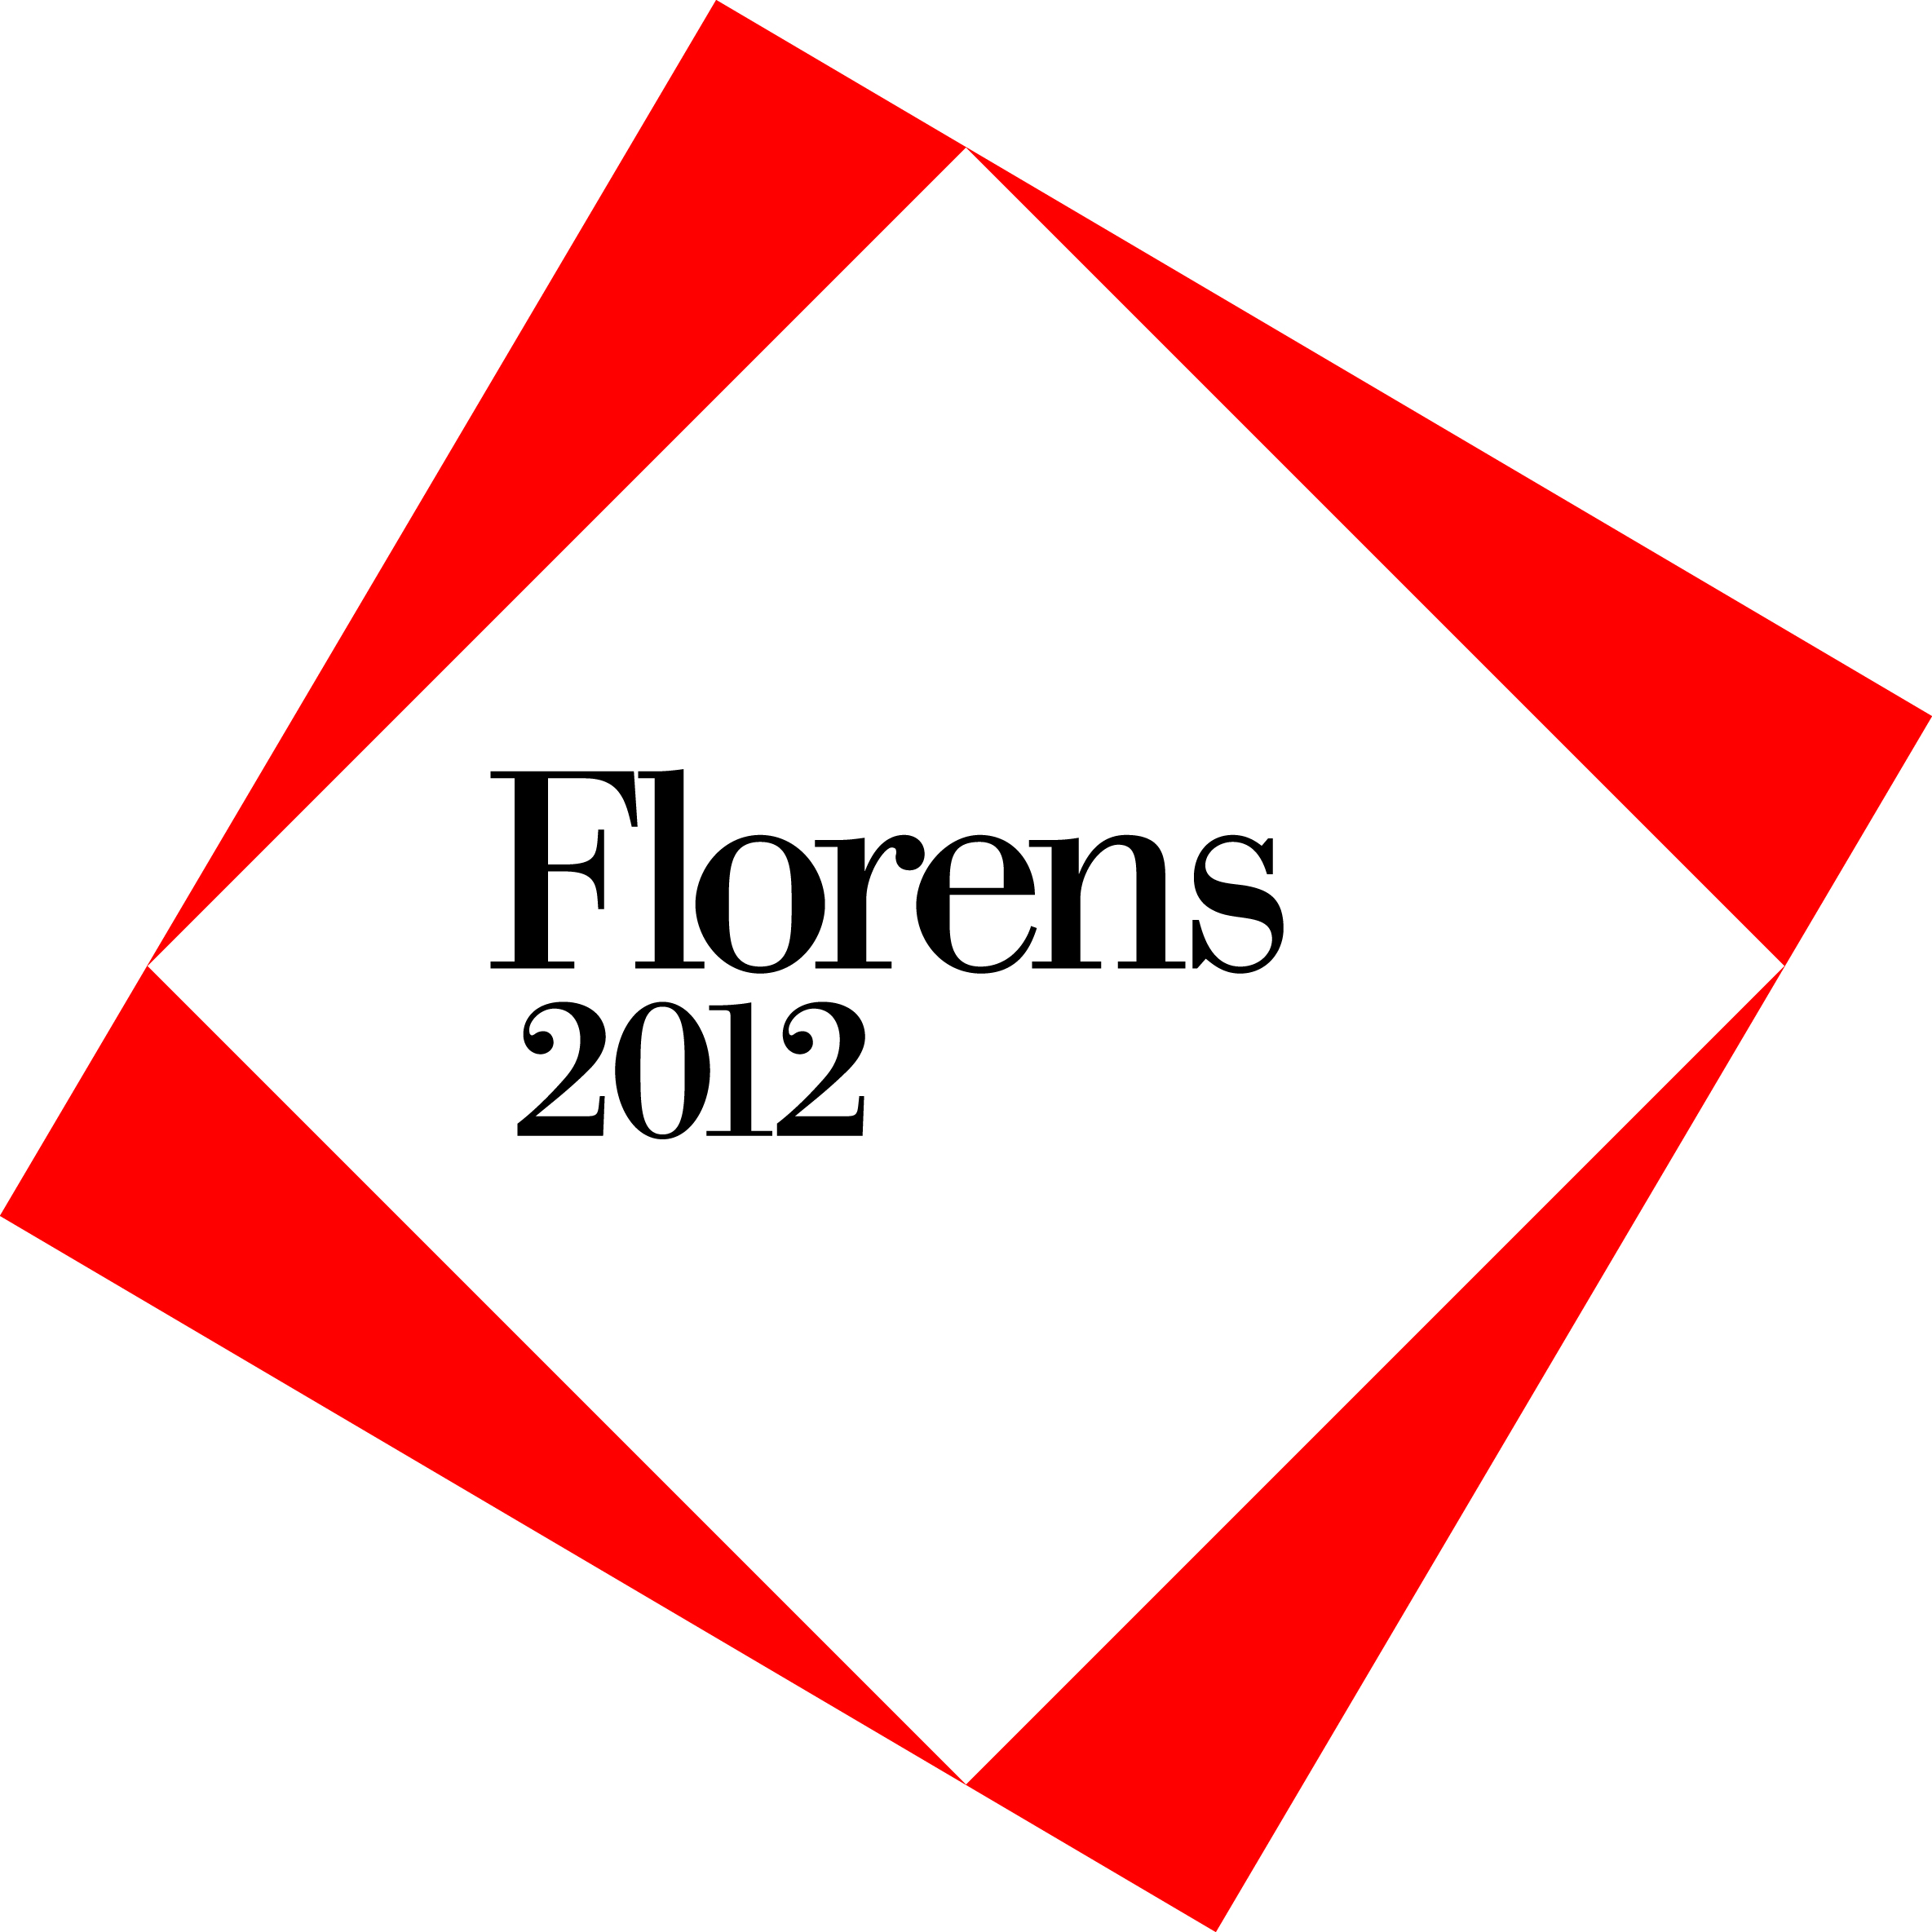 Florens 2012-Biennale Internazionale dei Beni Culturali e Ambientali